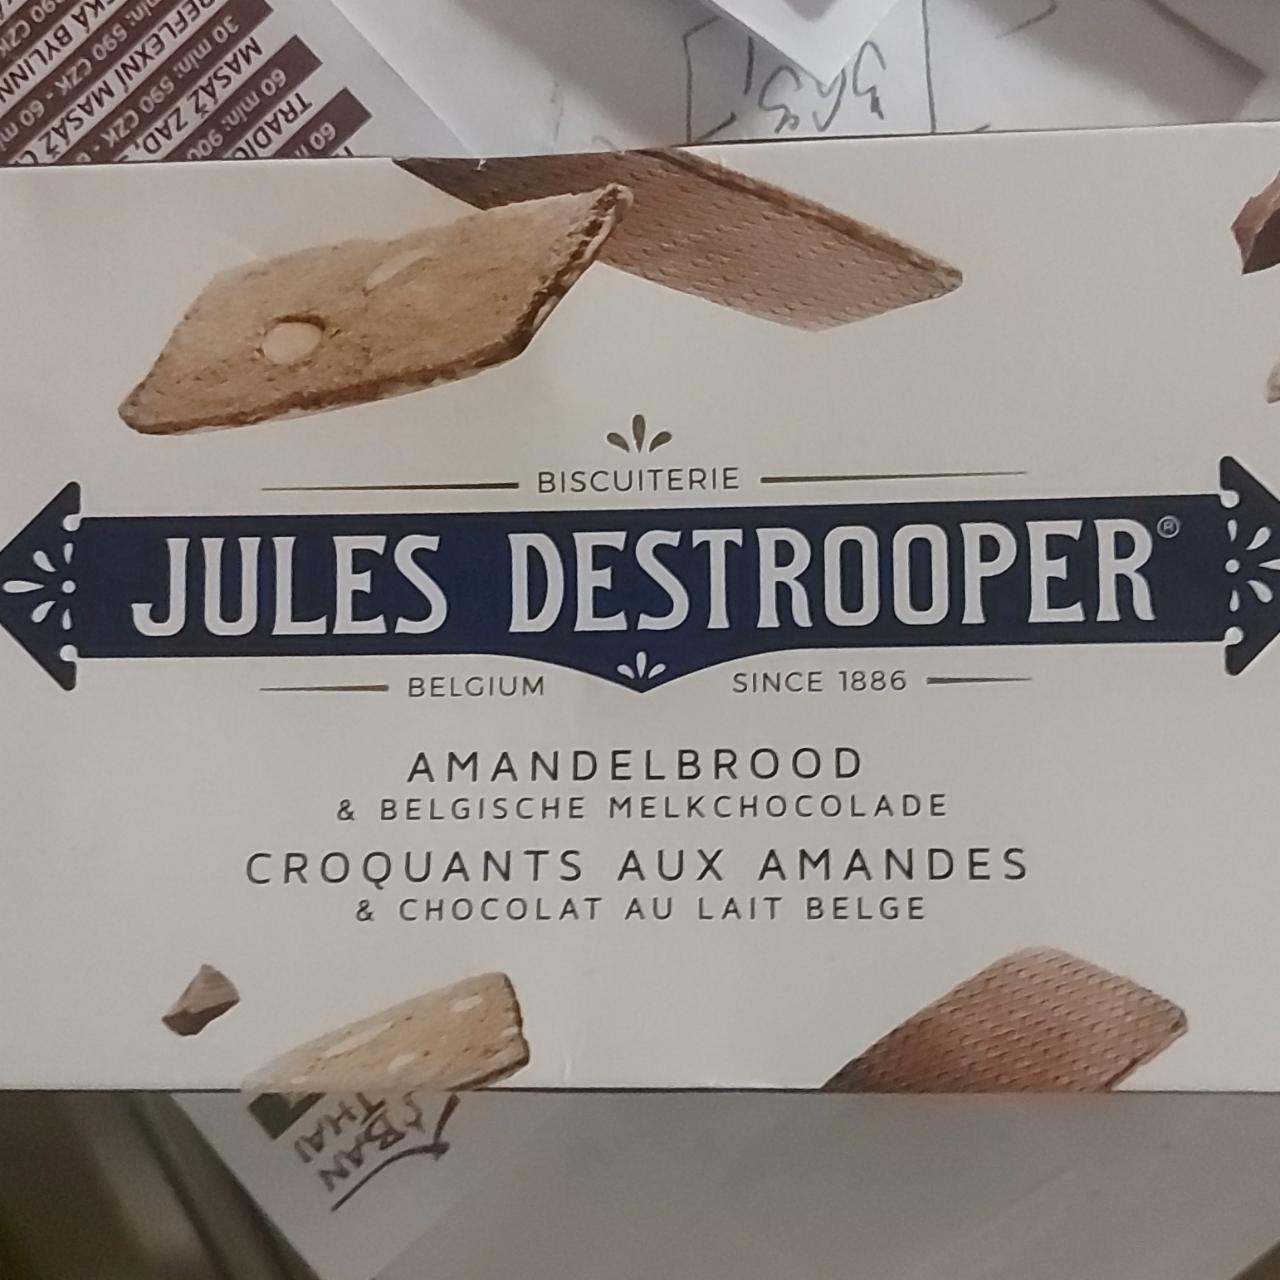 Fotografie - Amandelbrood & Belgische melkchocolade Jules Destrooper